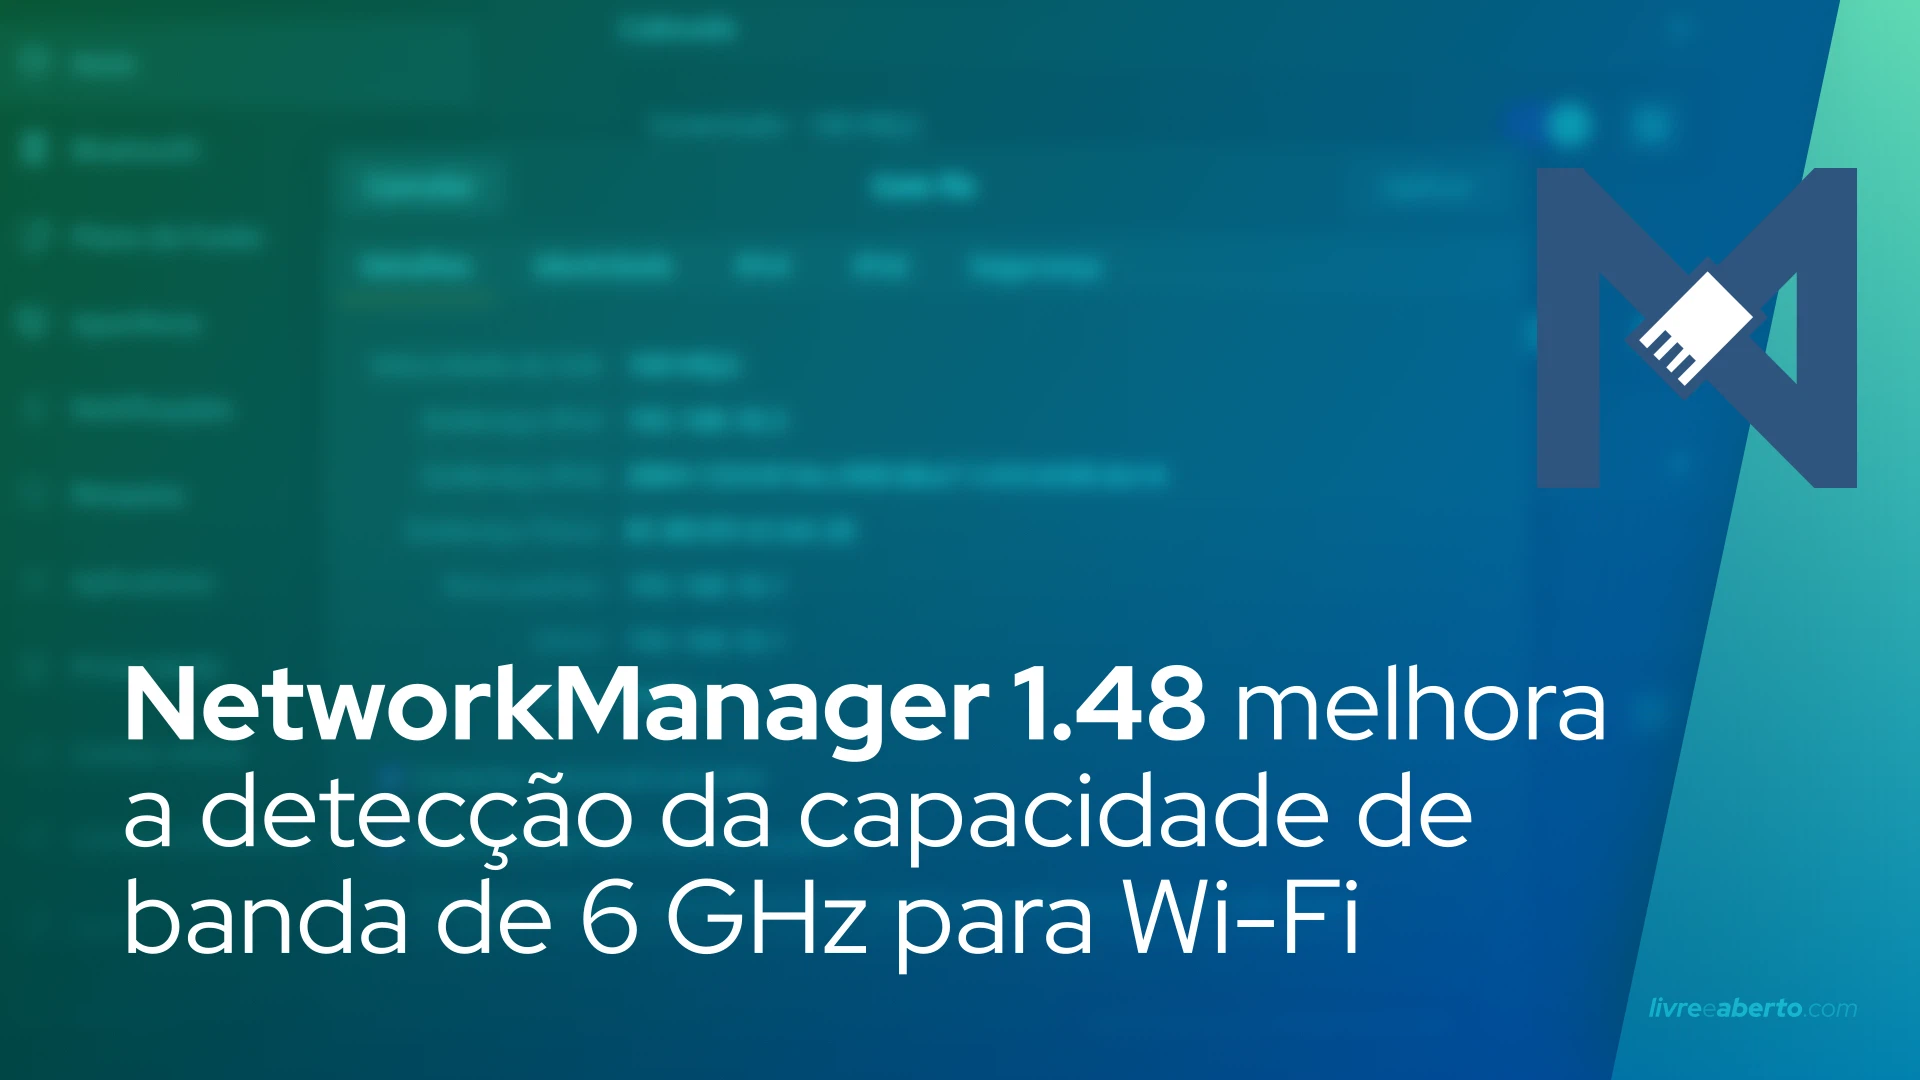 NetworkManager 1.48 melhora a detecção da capacidade de banda de 6 GHz para dispositivos Wi-Fi